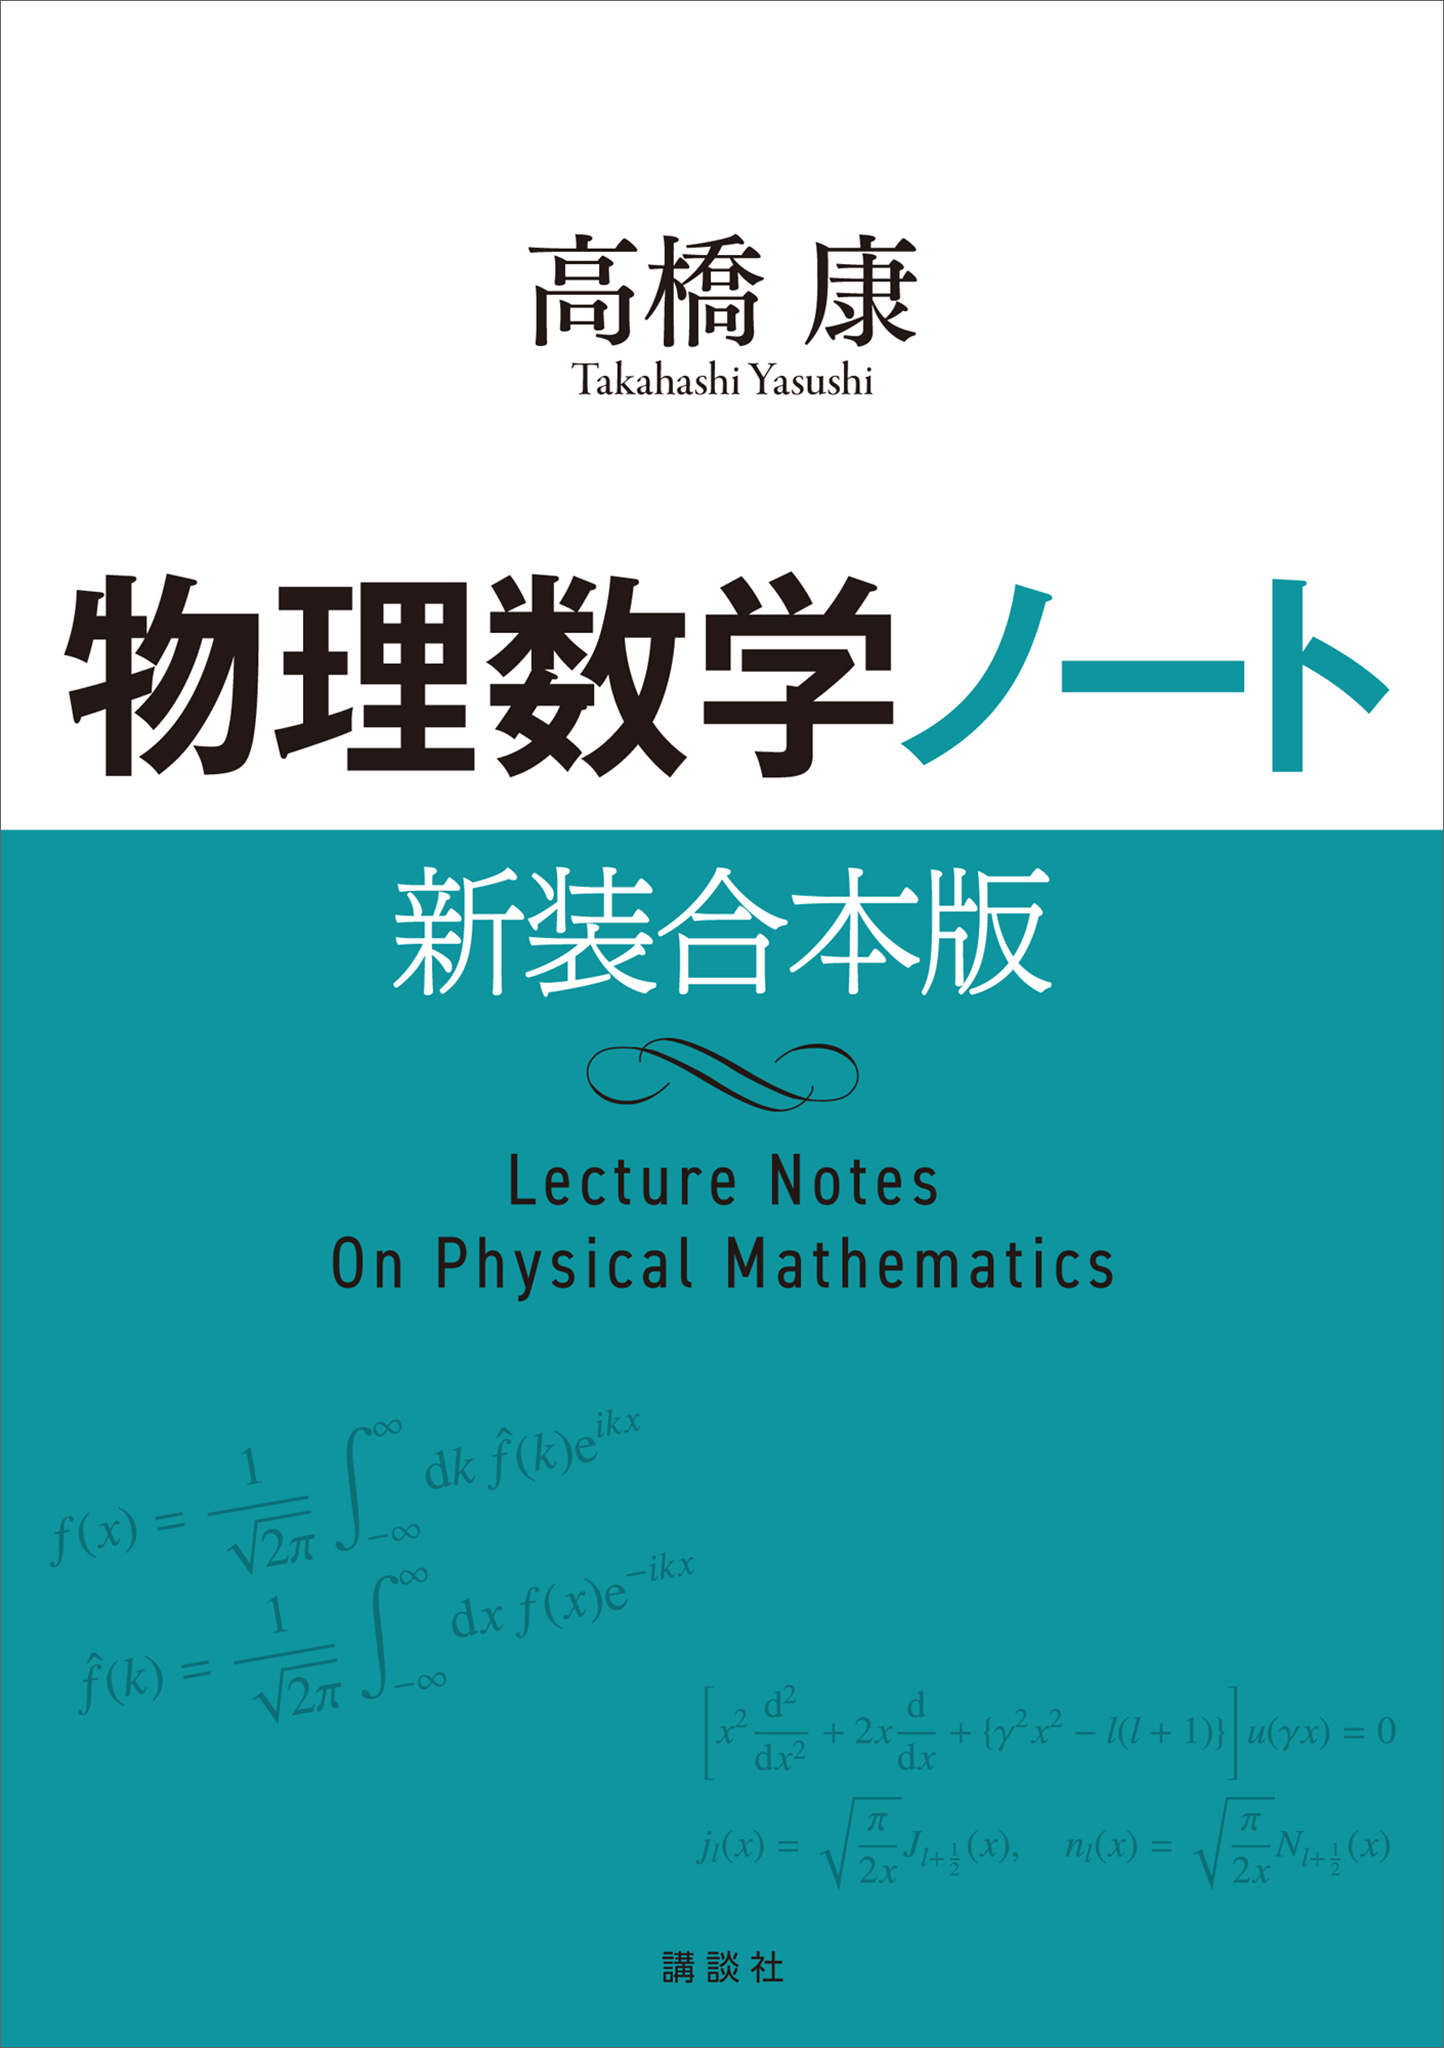 現代物理数学ハンドブック :20230405195748-00580us:BOOKS-kawazurado - 通販 - Yahoo!ショッピング -  物理学